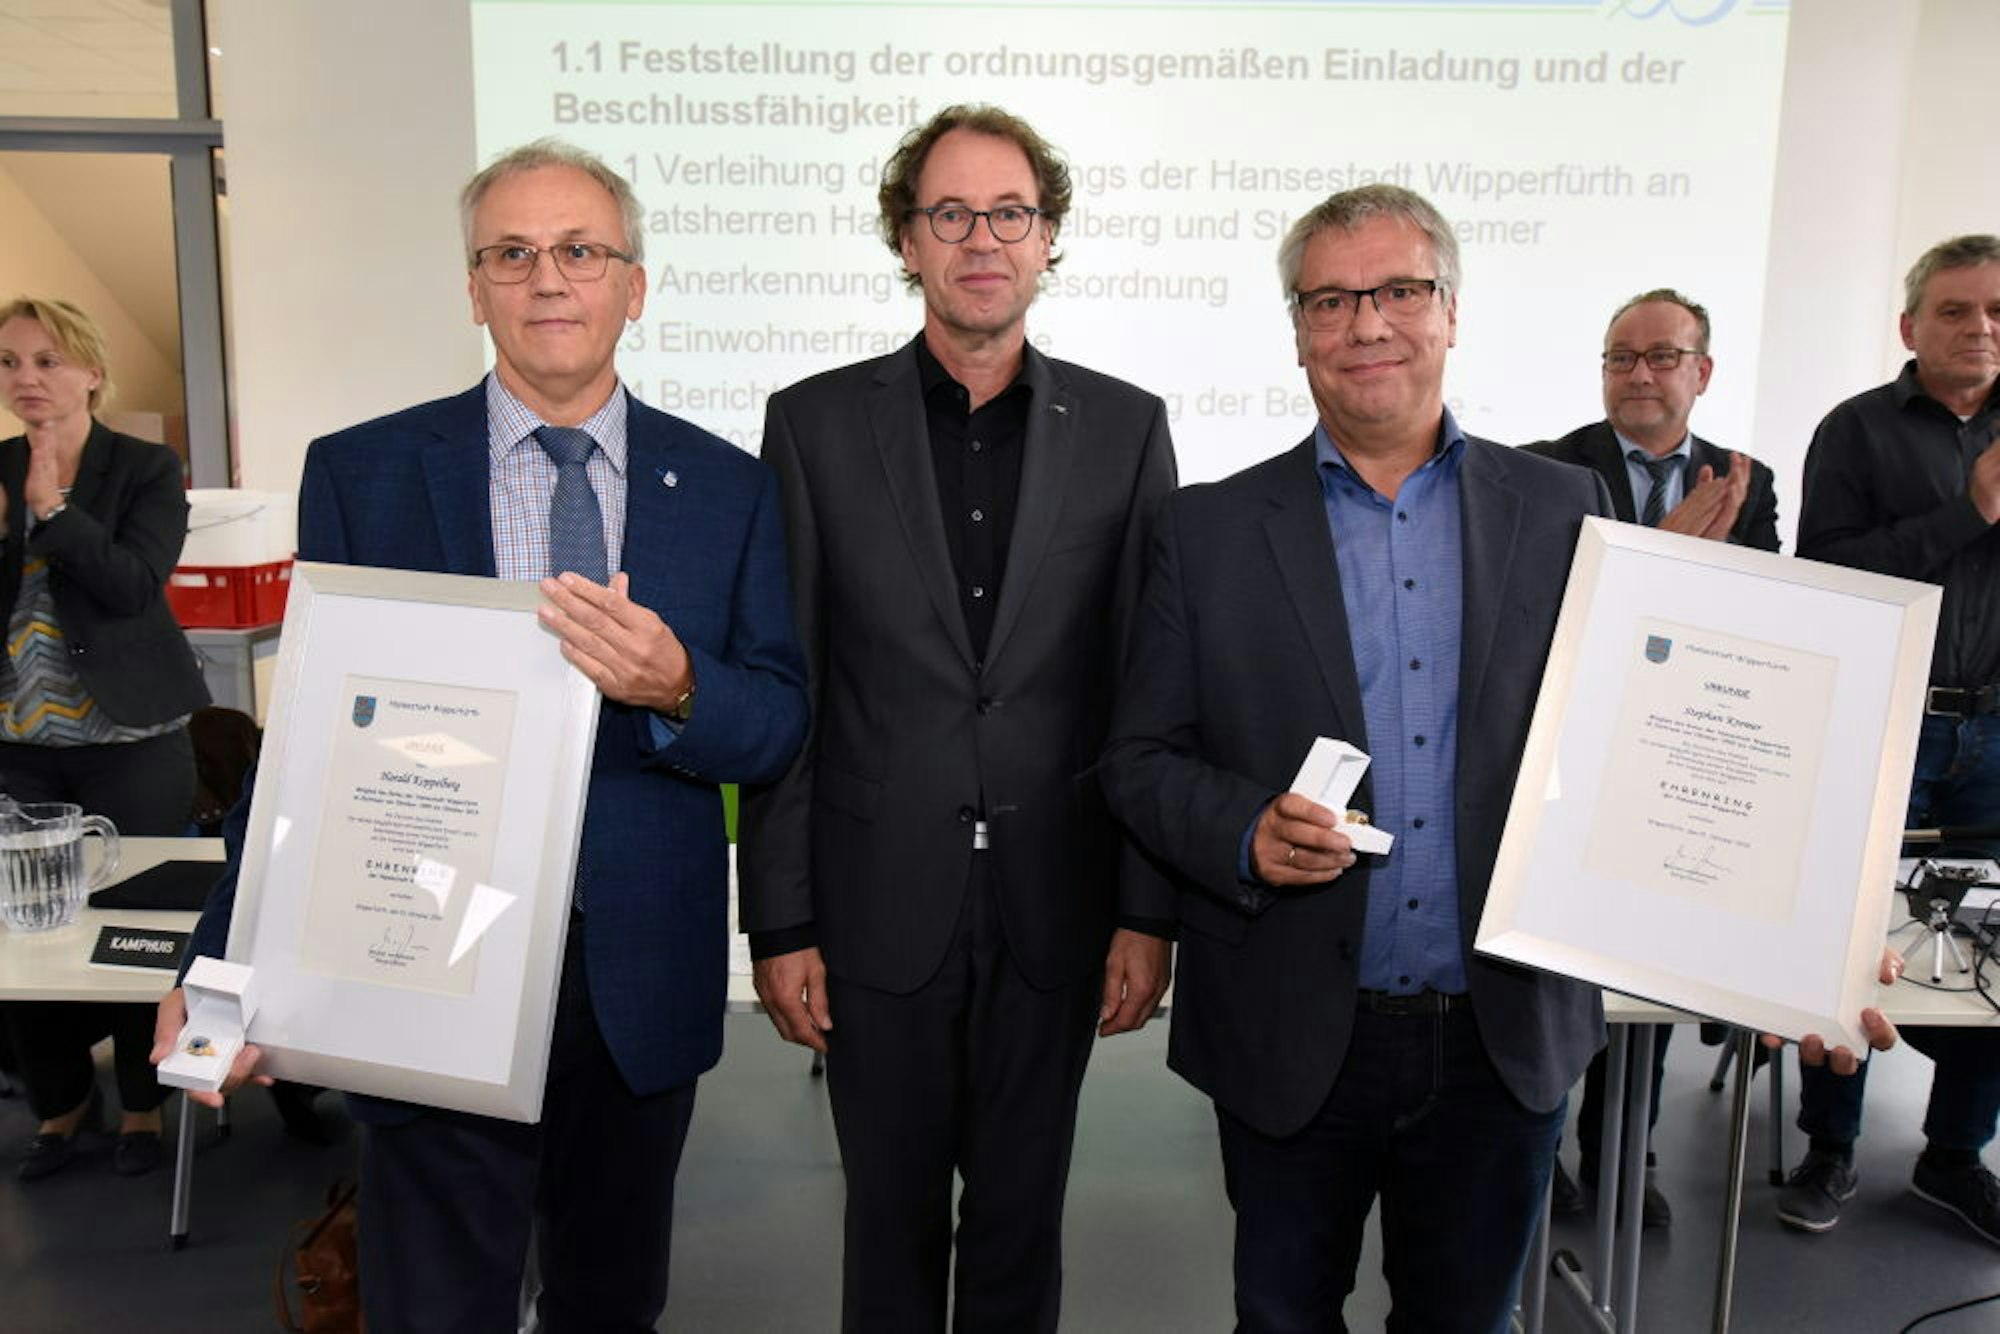 Harald Koppelberg (UWG) (l.) und Stephan Kremer (CDU) (r.) wurden von Bürgermeister Michael von Rekowski ausgezeichnet.